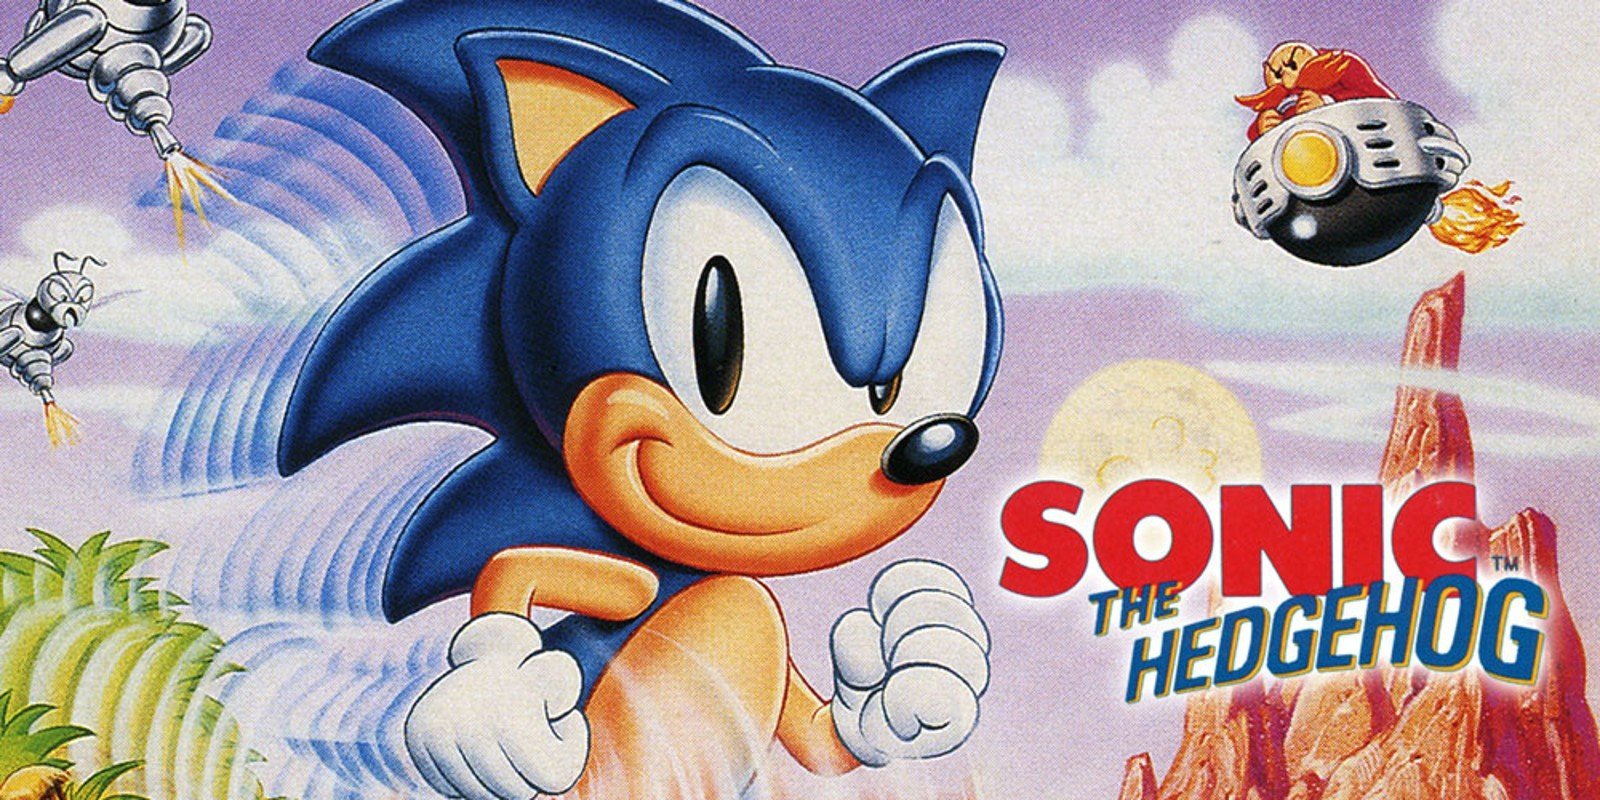 Sonic Sega